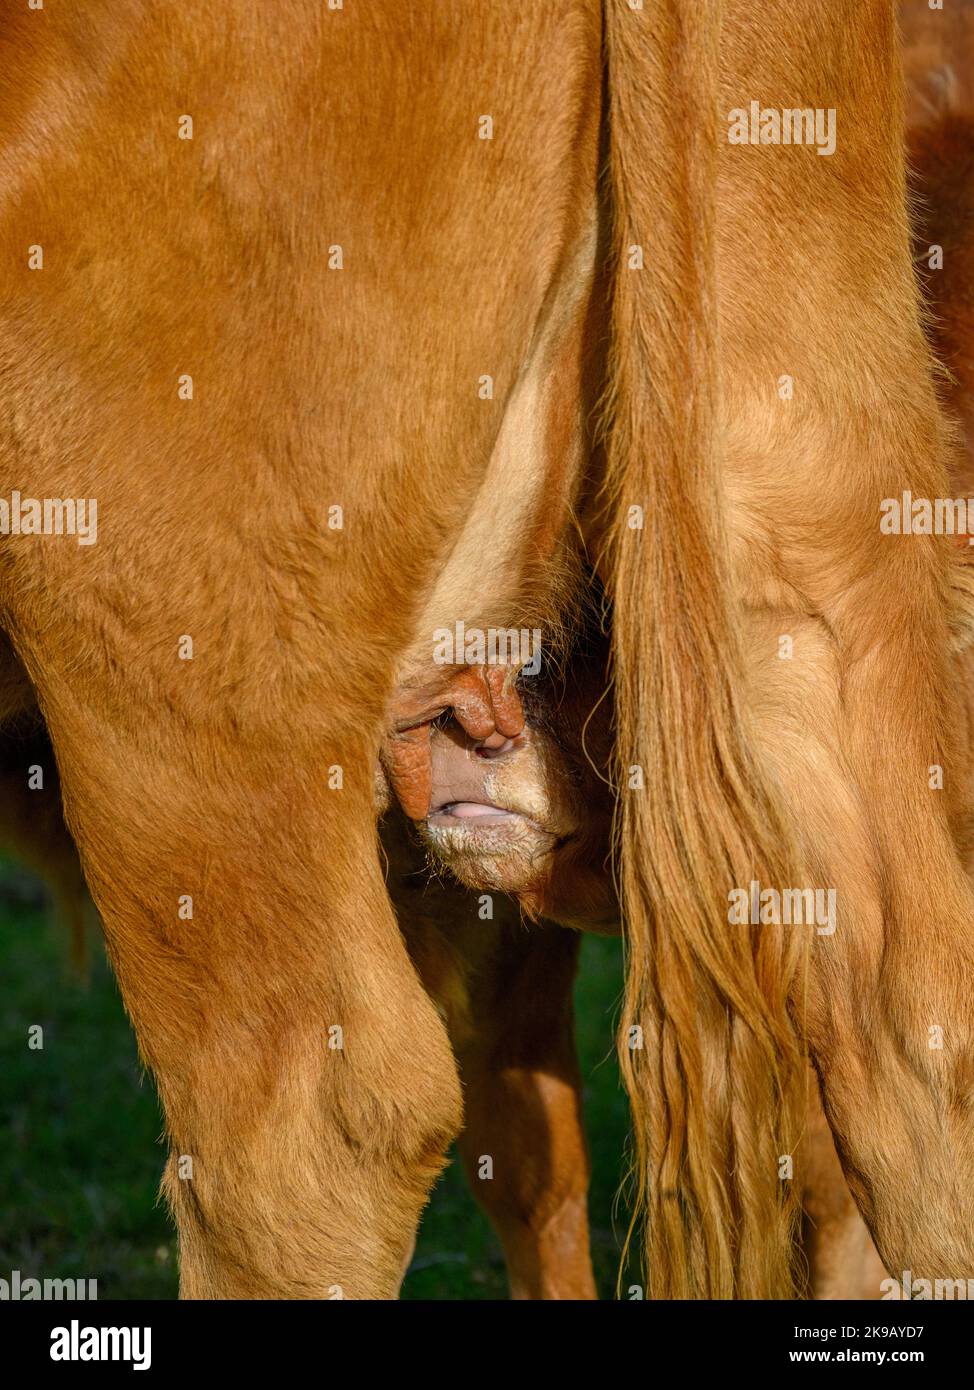 Mucca bruna illuminata dal sole e piccolo vitello neonato in piedi in campo agricolo (giovane assetato affamato, latte materno, capezzoli di mammelle in primo piano) - Yorkshire, Inghilterra, Regno Unito. Foto Stock